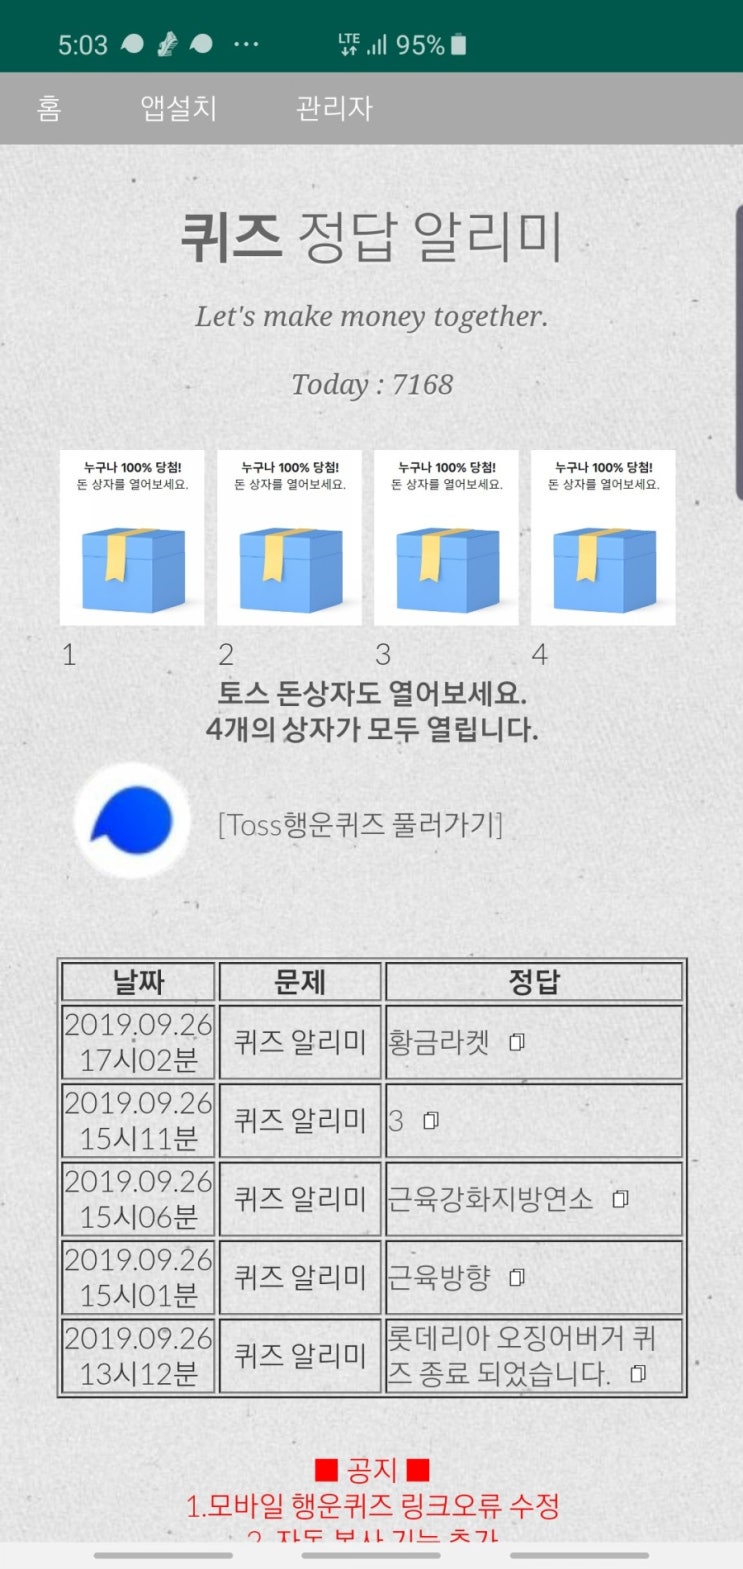 올스타 스매시 런칭 토스행운퀴즈 정답 공개(실시간)